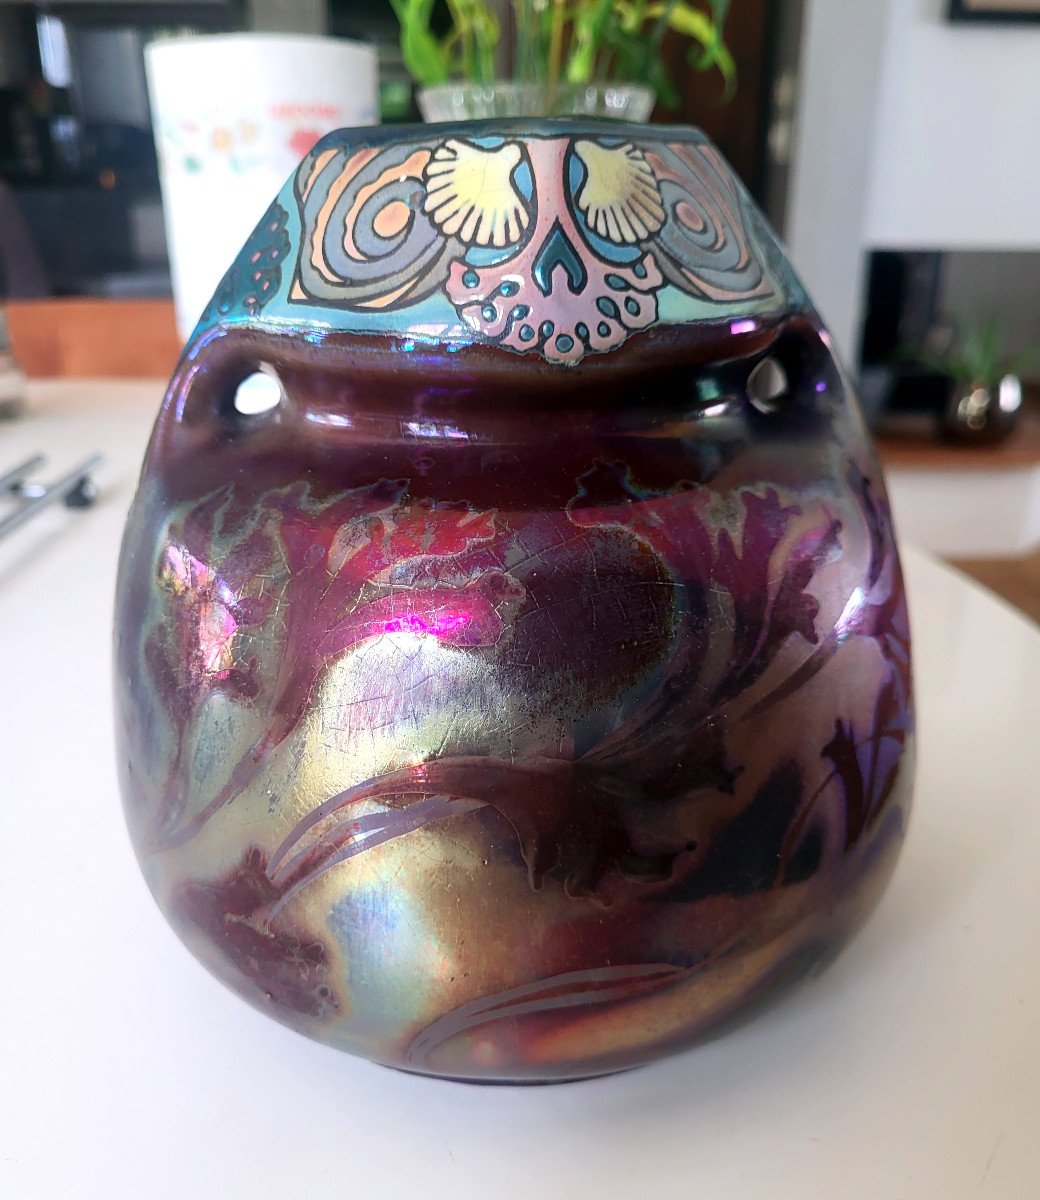 Montières Ceramic Iridescent Bulbous Vase (double Signature)